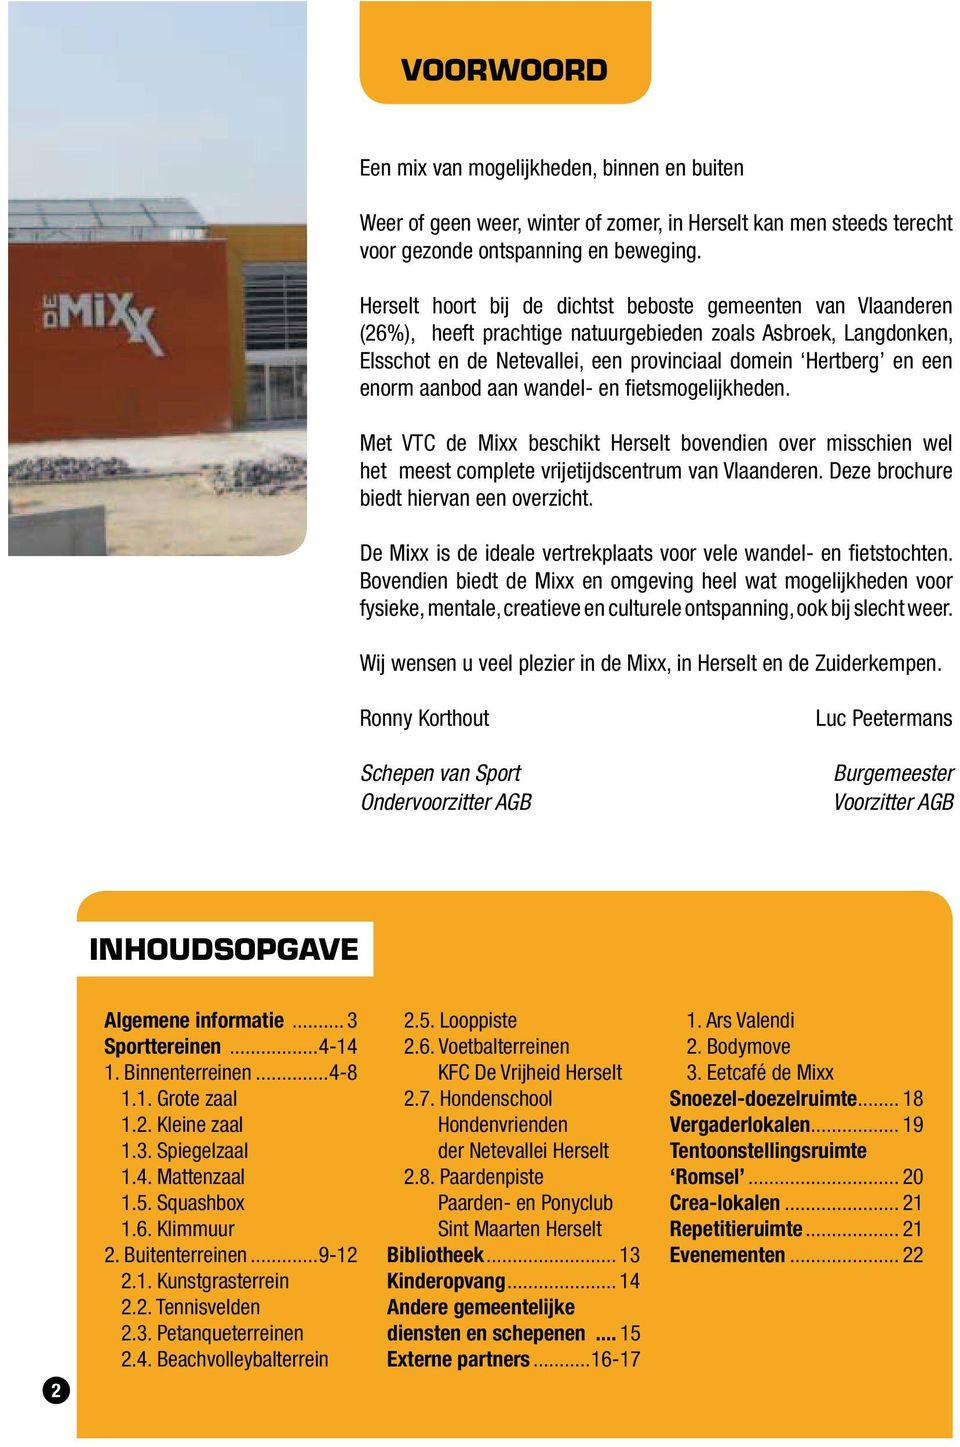 aan wandel- en fietsmogelijkheden. Met VTC de Mixx beschikt bovendien over misschien wel het meest complete vrijetijdscentrum van Vlaanderen. Deze brochure biedt hiervan een overzicht.